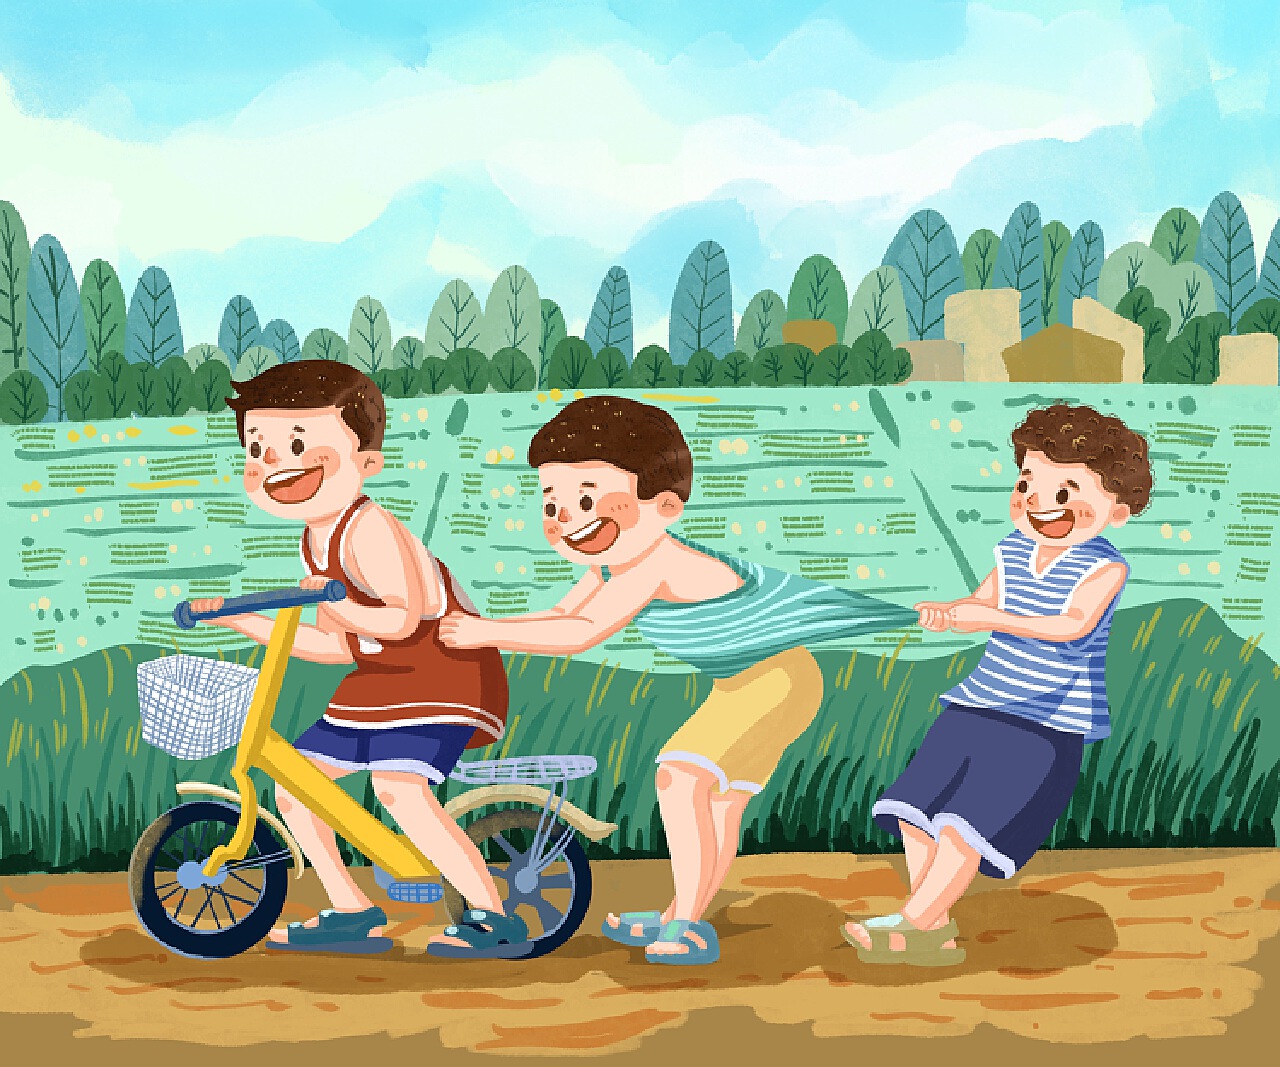 诺亚舟聚焦：幼儿园暑假计划，让孩子做到“4个学会”和“6个完成”_诺亚舟新闻_诺亚舟官网